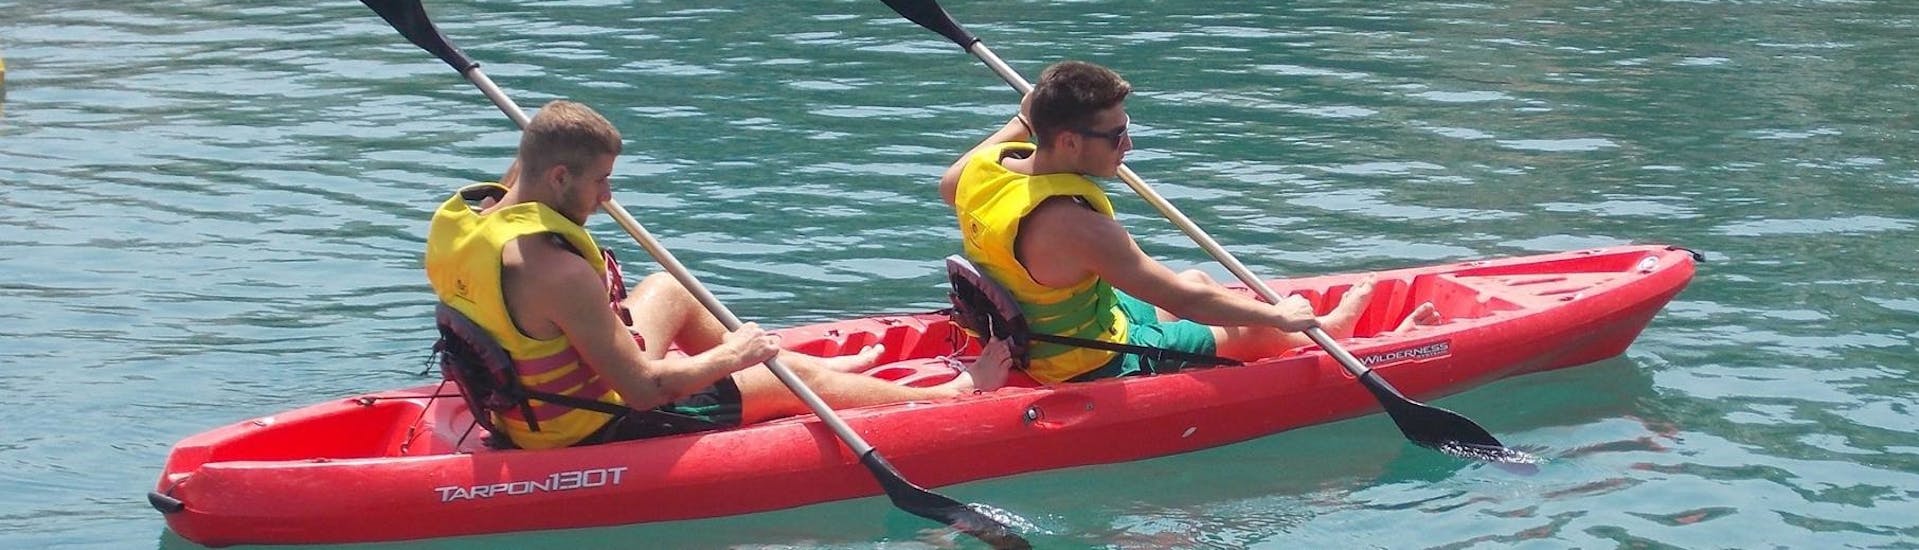 Due persone pagaiano su una canoa durante il Noleggio canoa a Bali a Creta con The Skippers - Boats & Water Sports Bali.